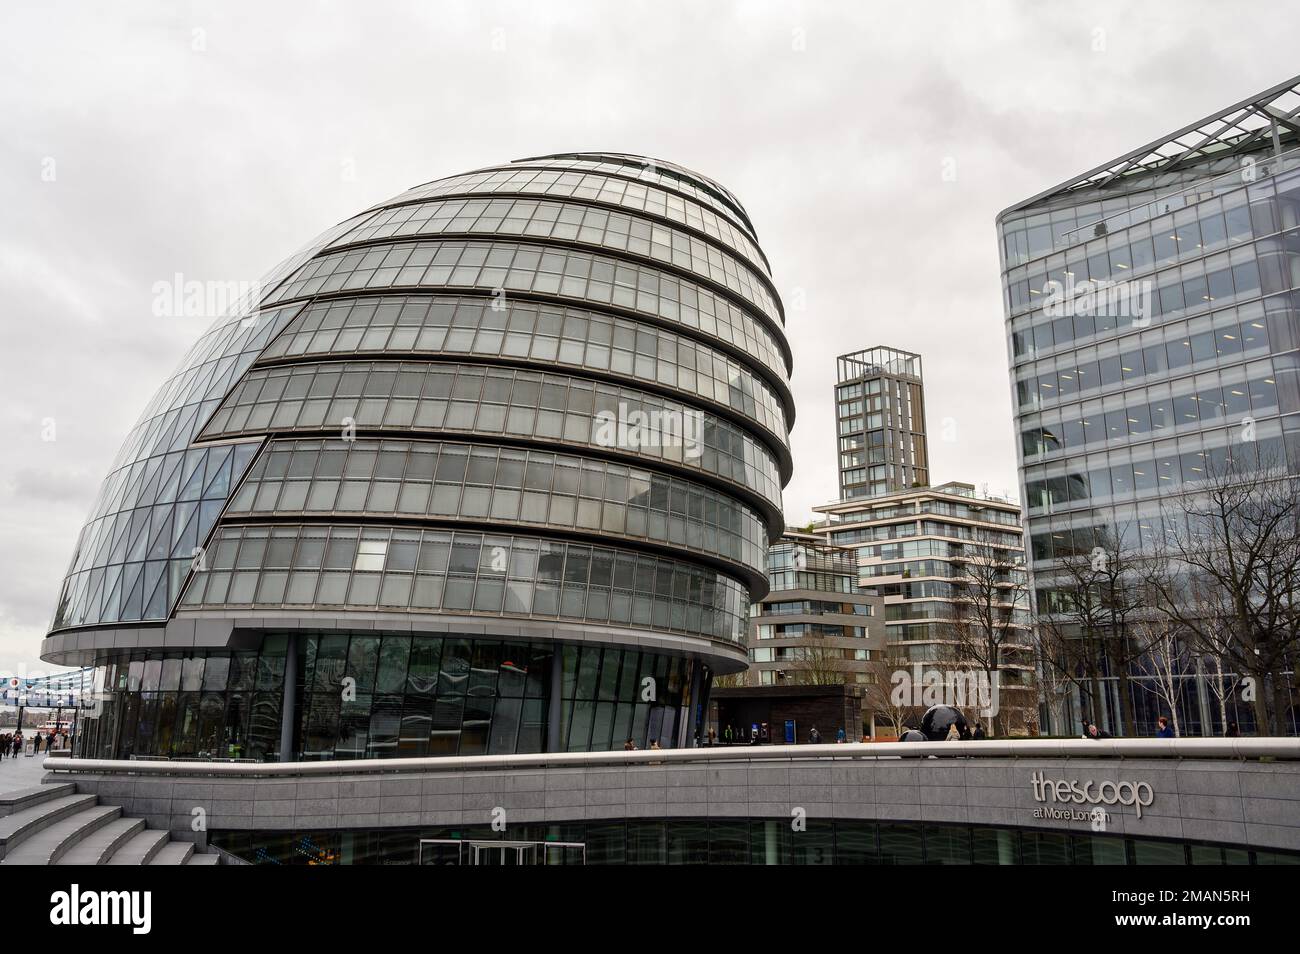 Plus quartier de Londres, Londres / Royaume-Uni: Vue de l'hôtel de ville (bureau du maire de Londres), d'autres immeubles de bureaux et de l'amphithéâtre Scoop. Banque D'Images